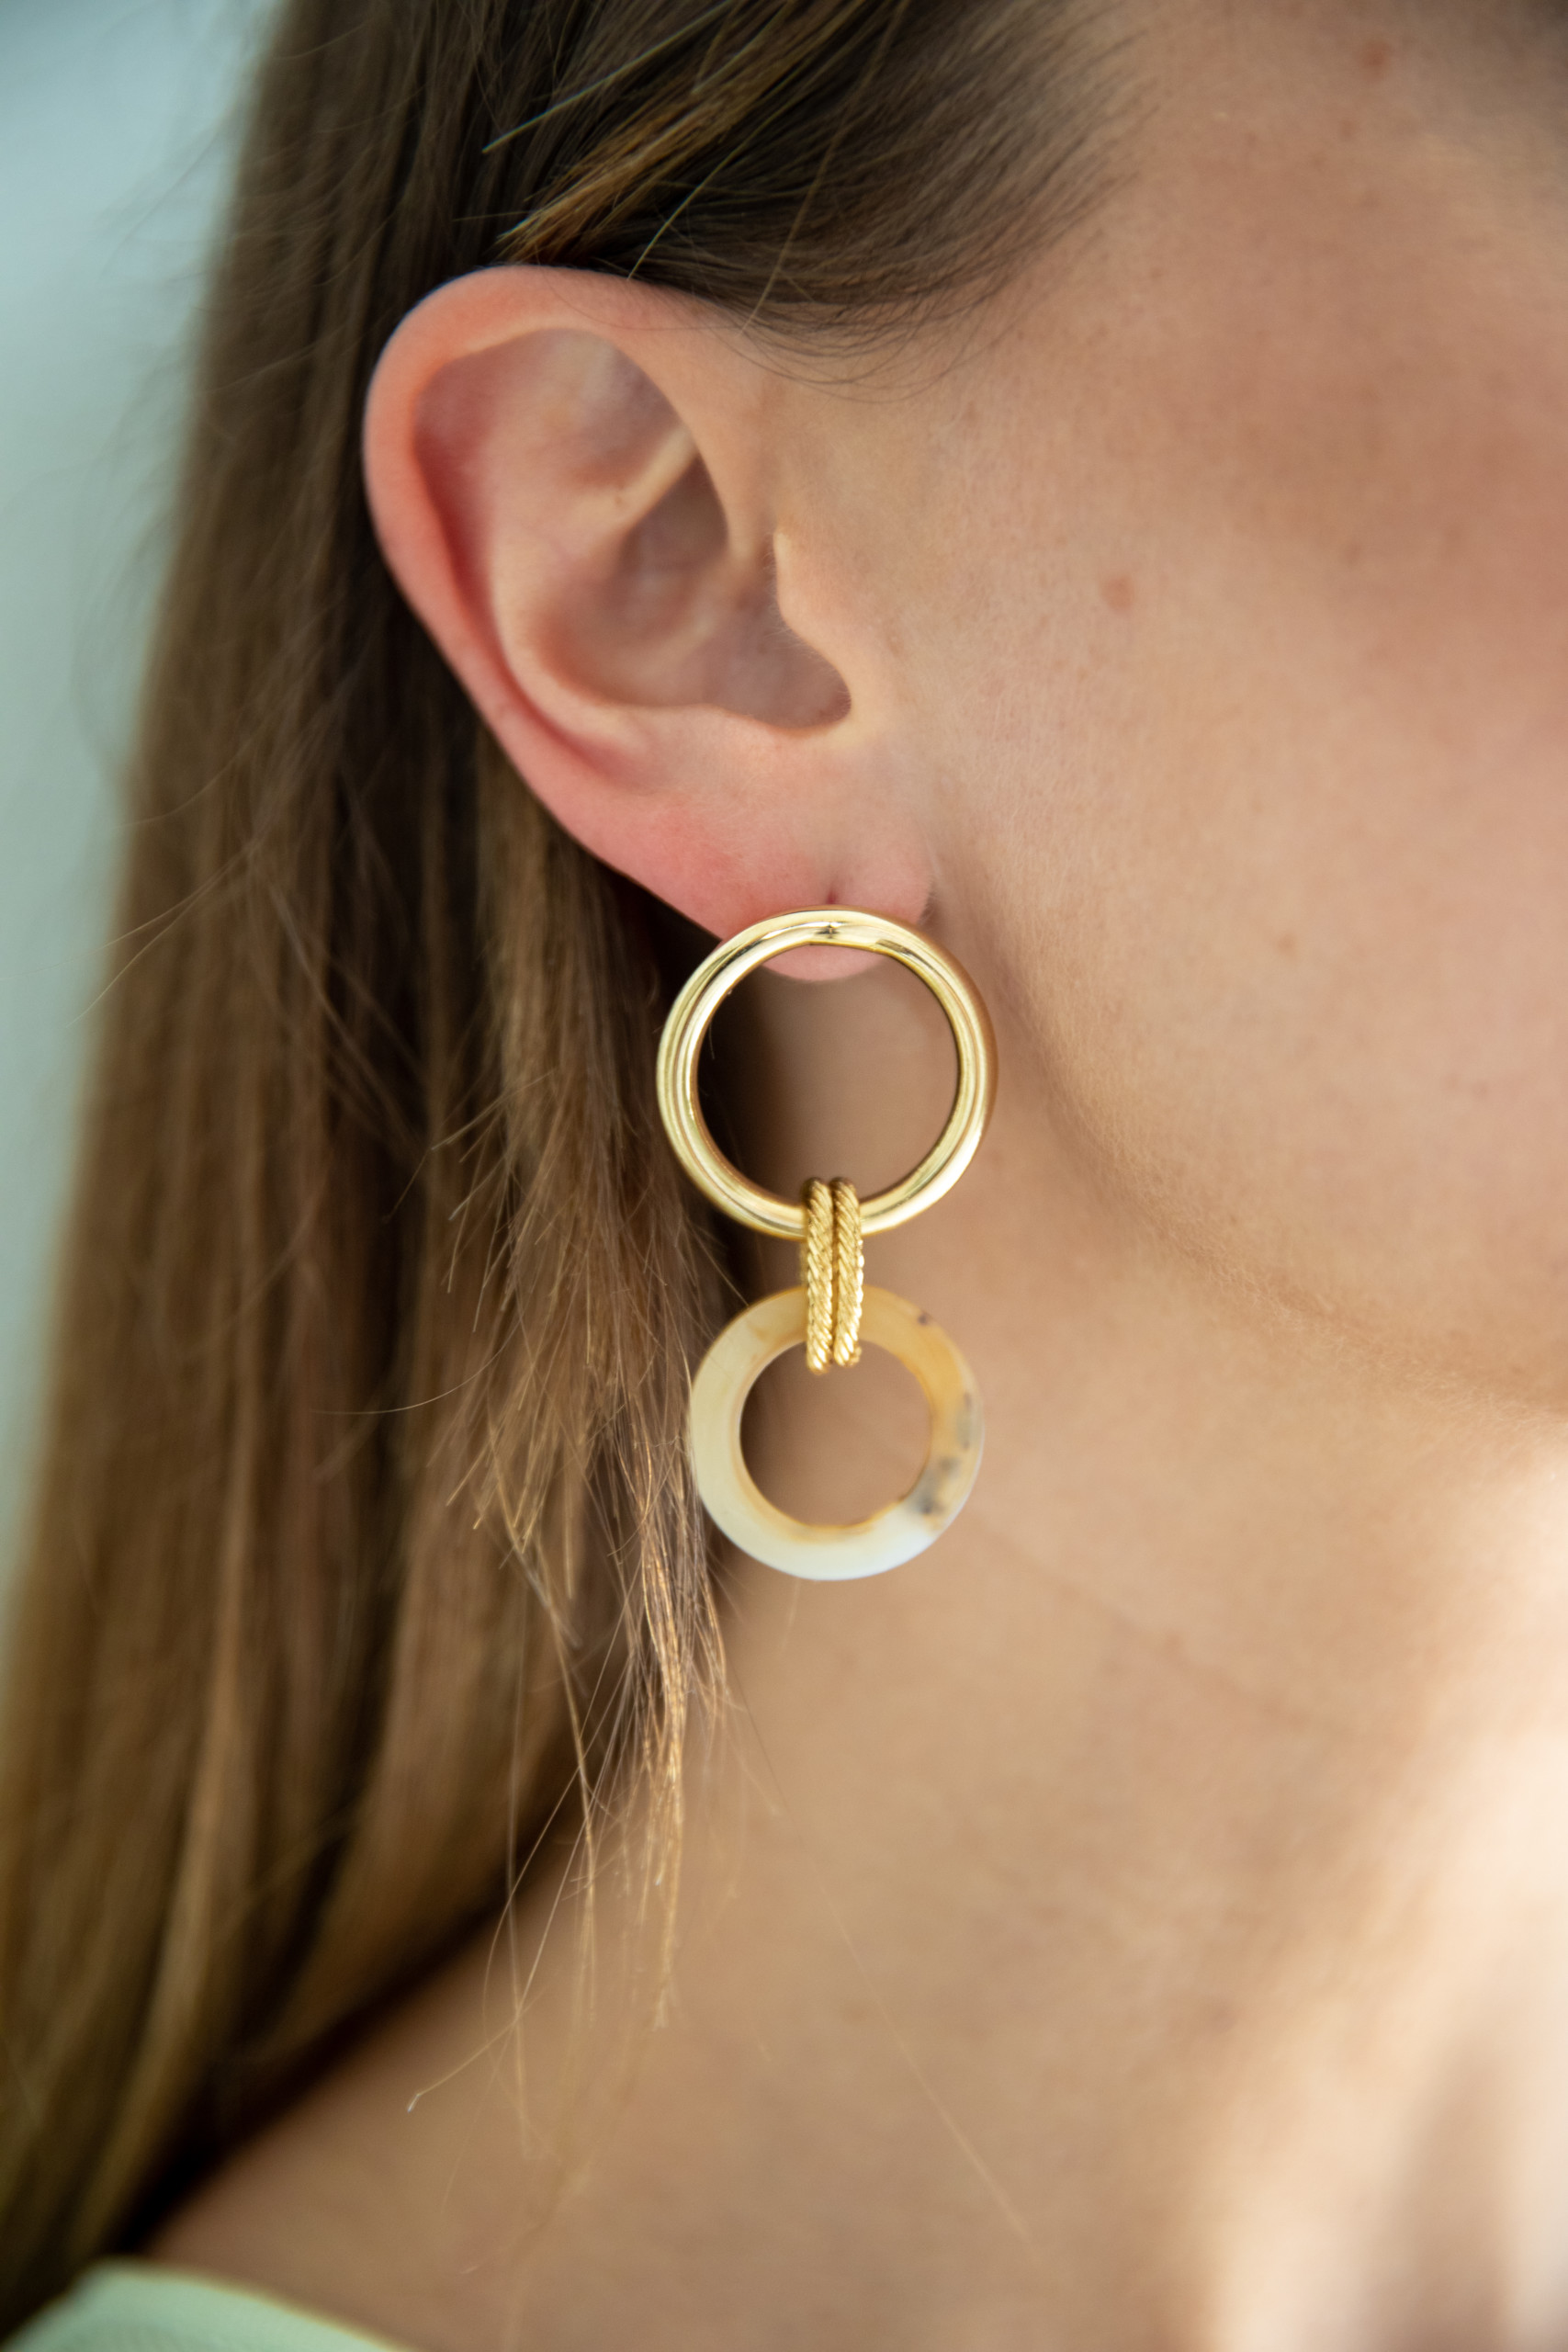 Ivy beige gold earrings